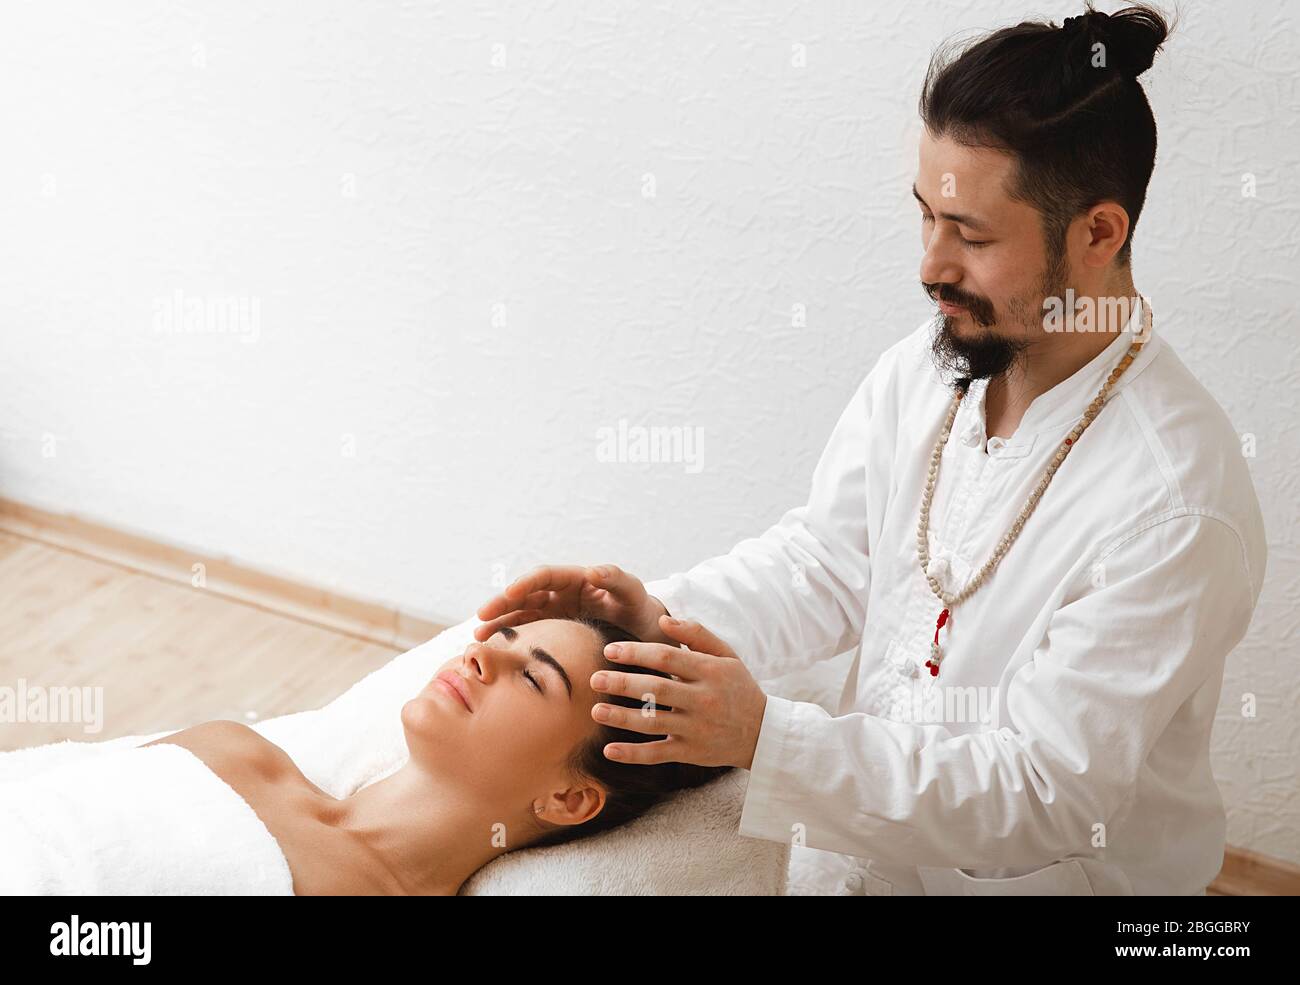 Doktor der traditionellen orientalischen Medizin mit energetischer Kopfmassage. Die energetische Massage nimmt die Energieleistung im Körper wieder auf Stockfoto